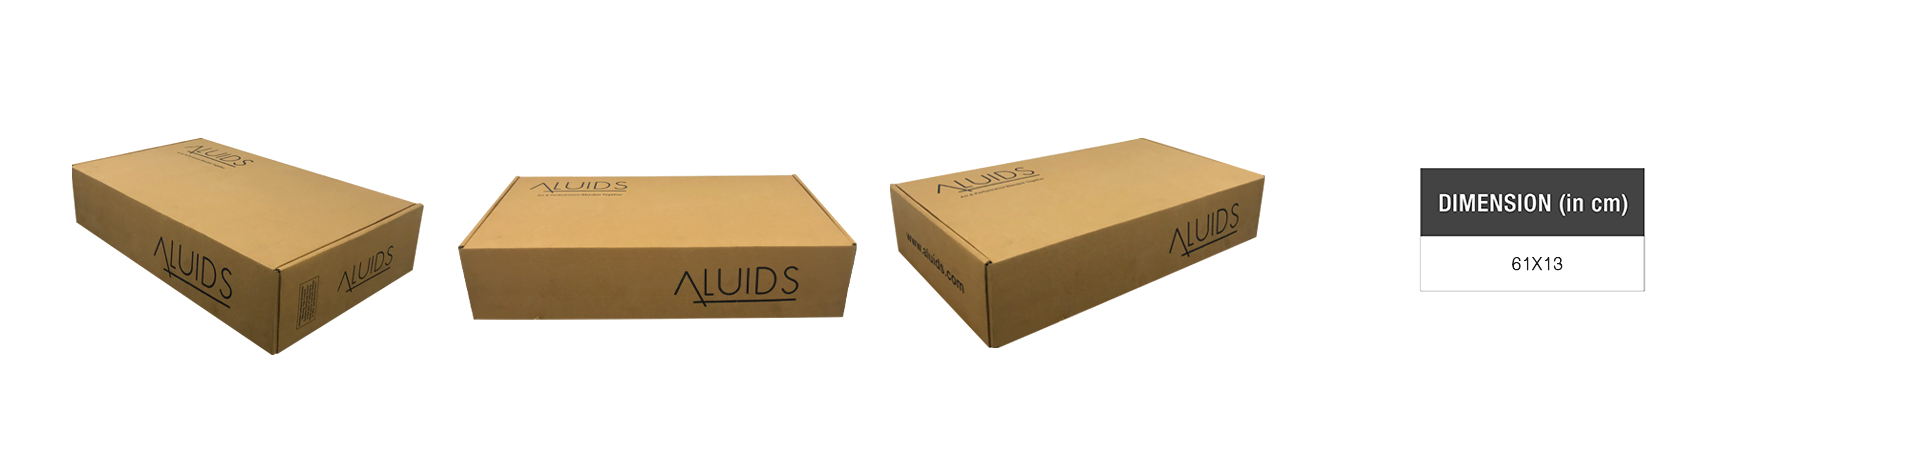 Packaging - aluids